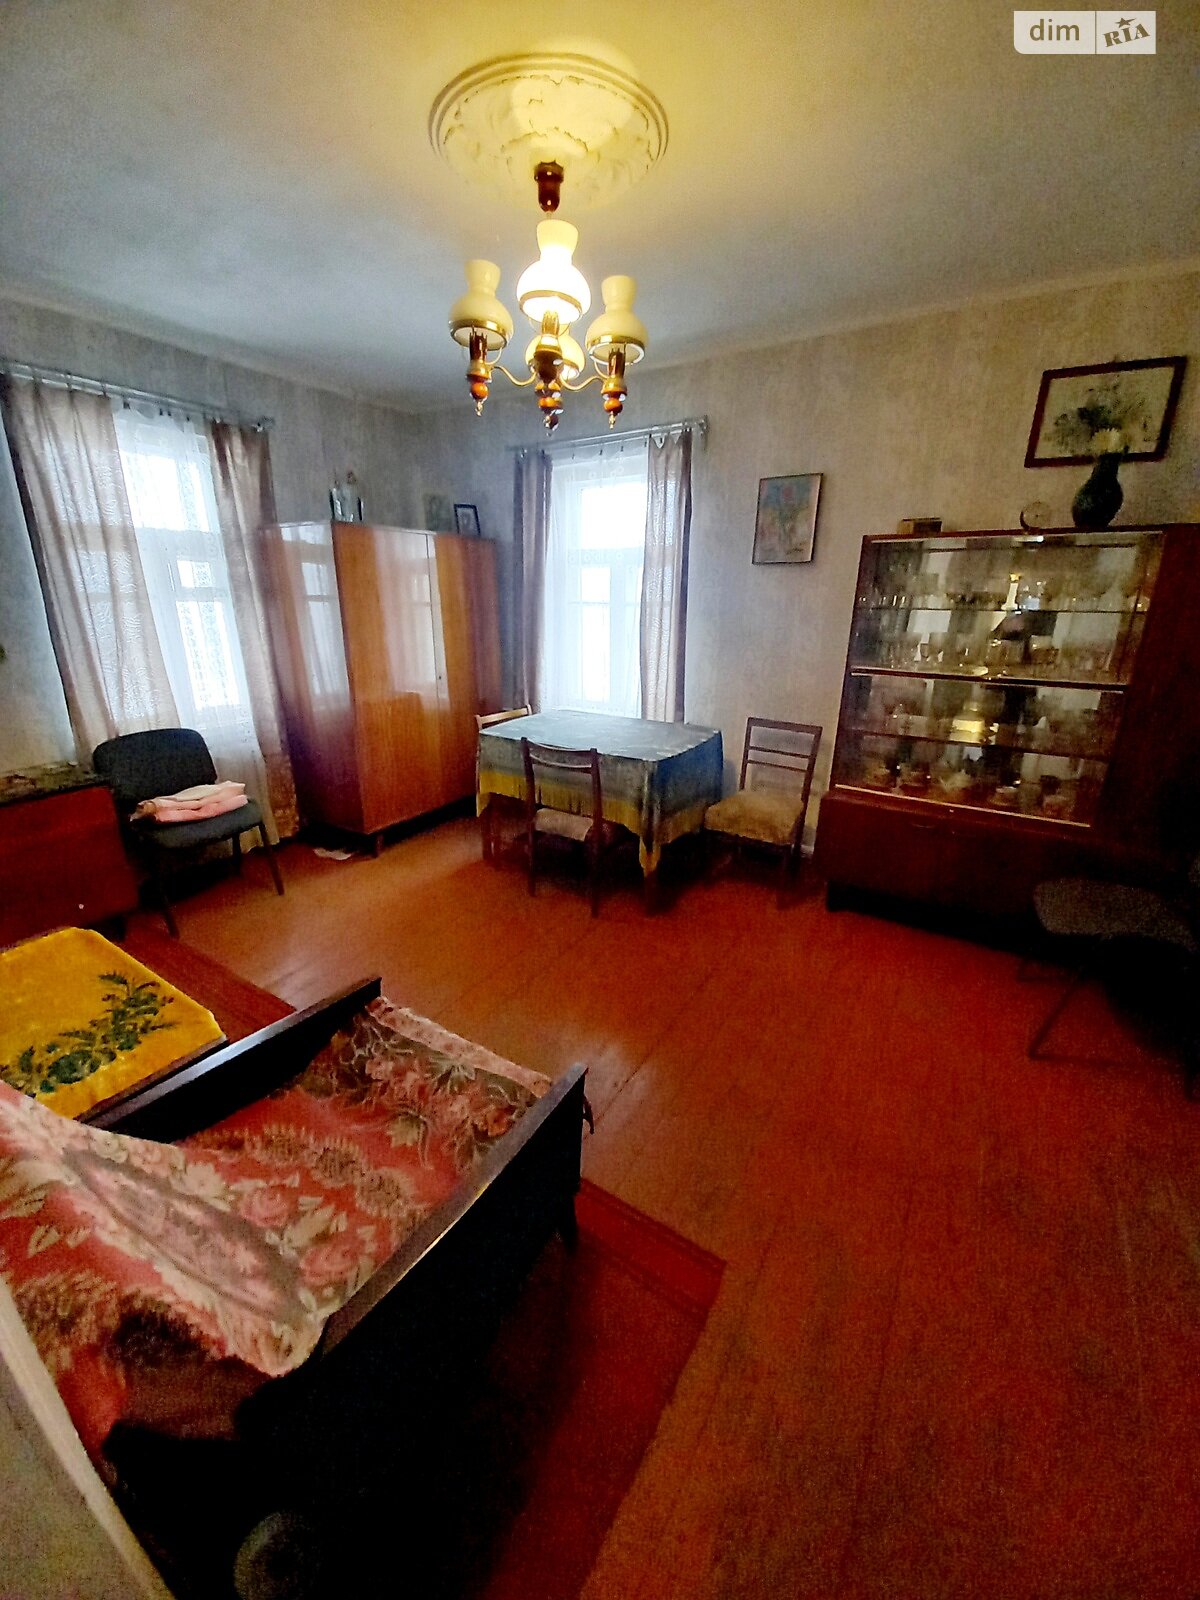 Продажа части дома в Ворзеле, улица Яблоньская, 4 комнаты фото 1